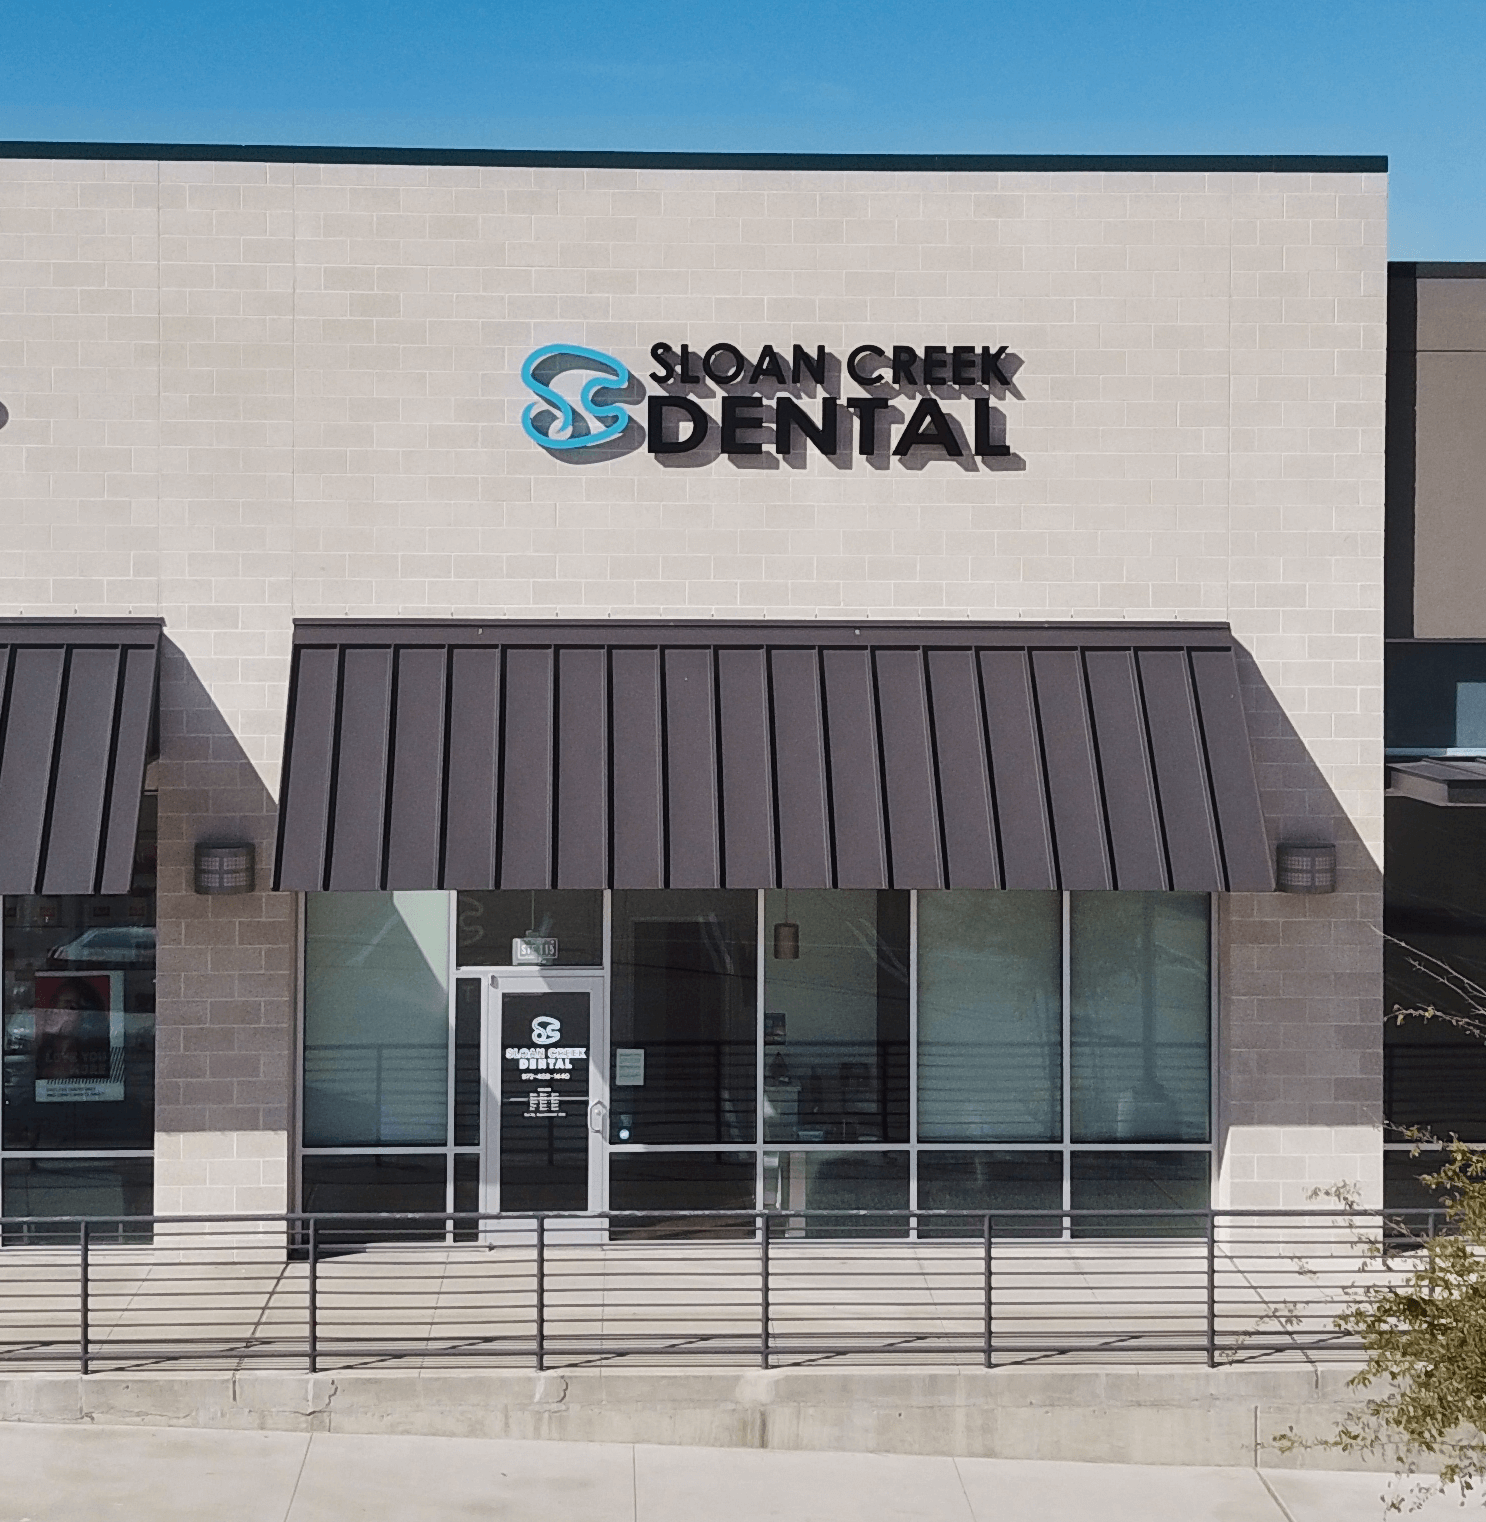 Sloan Creek Dental Storefront